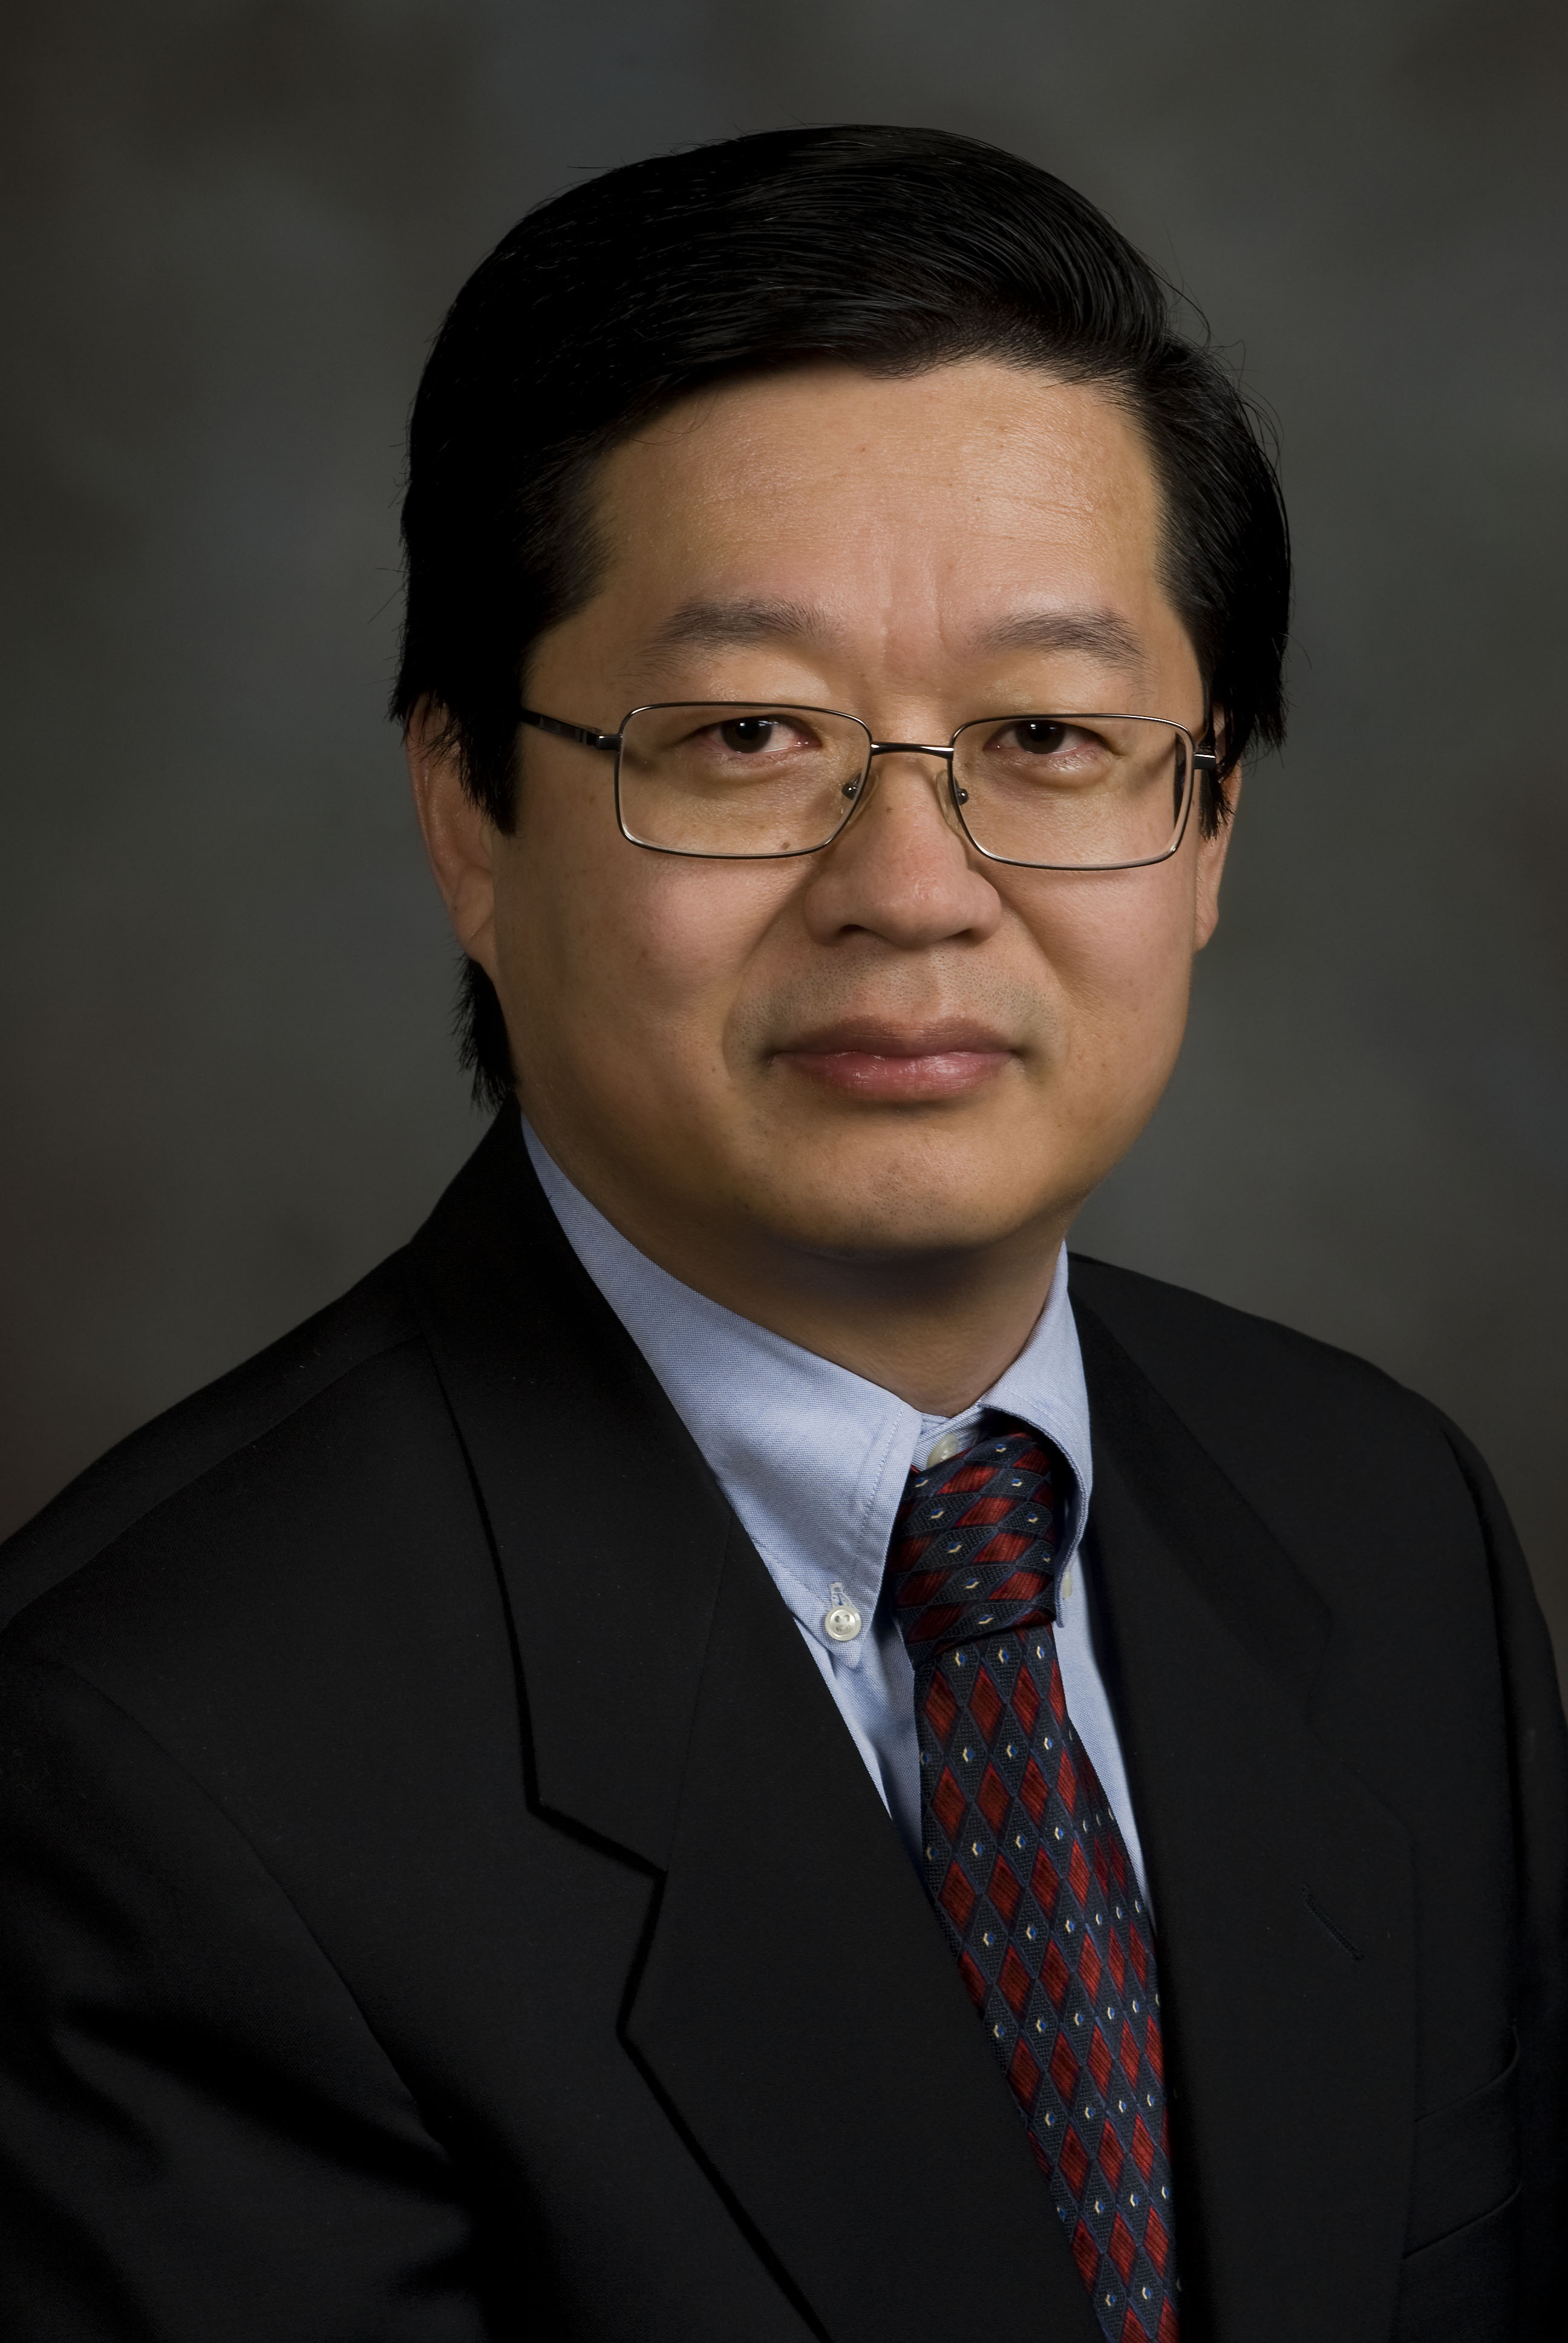 Dr. X. J. Meng